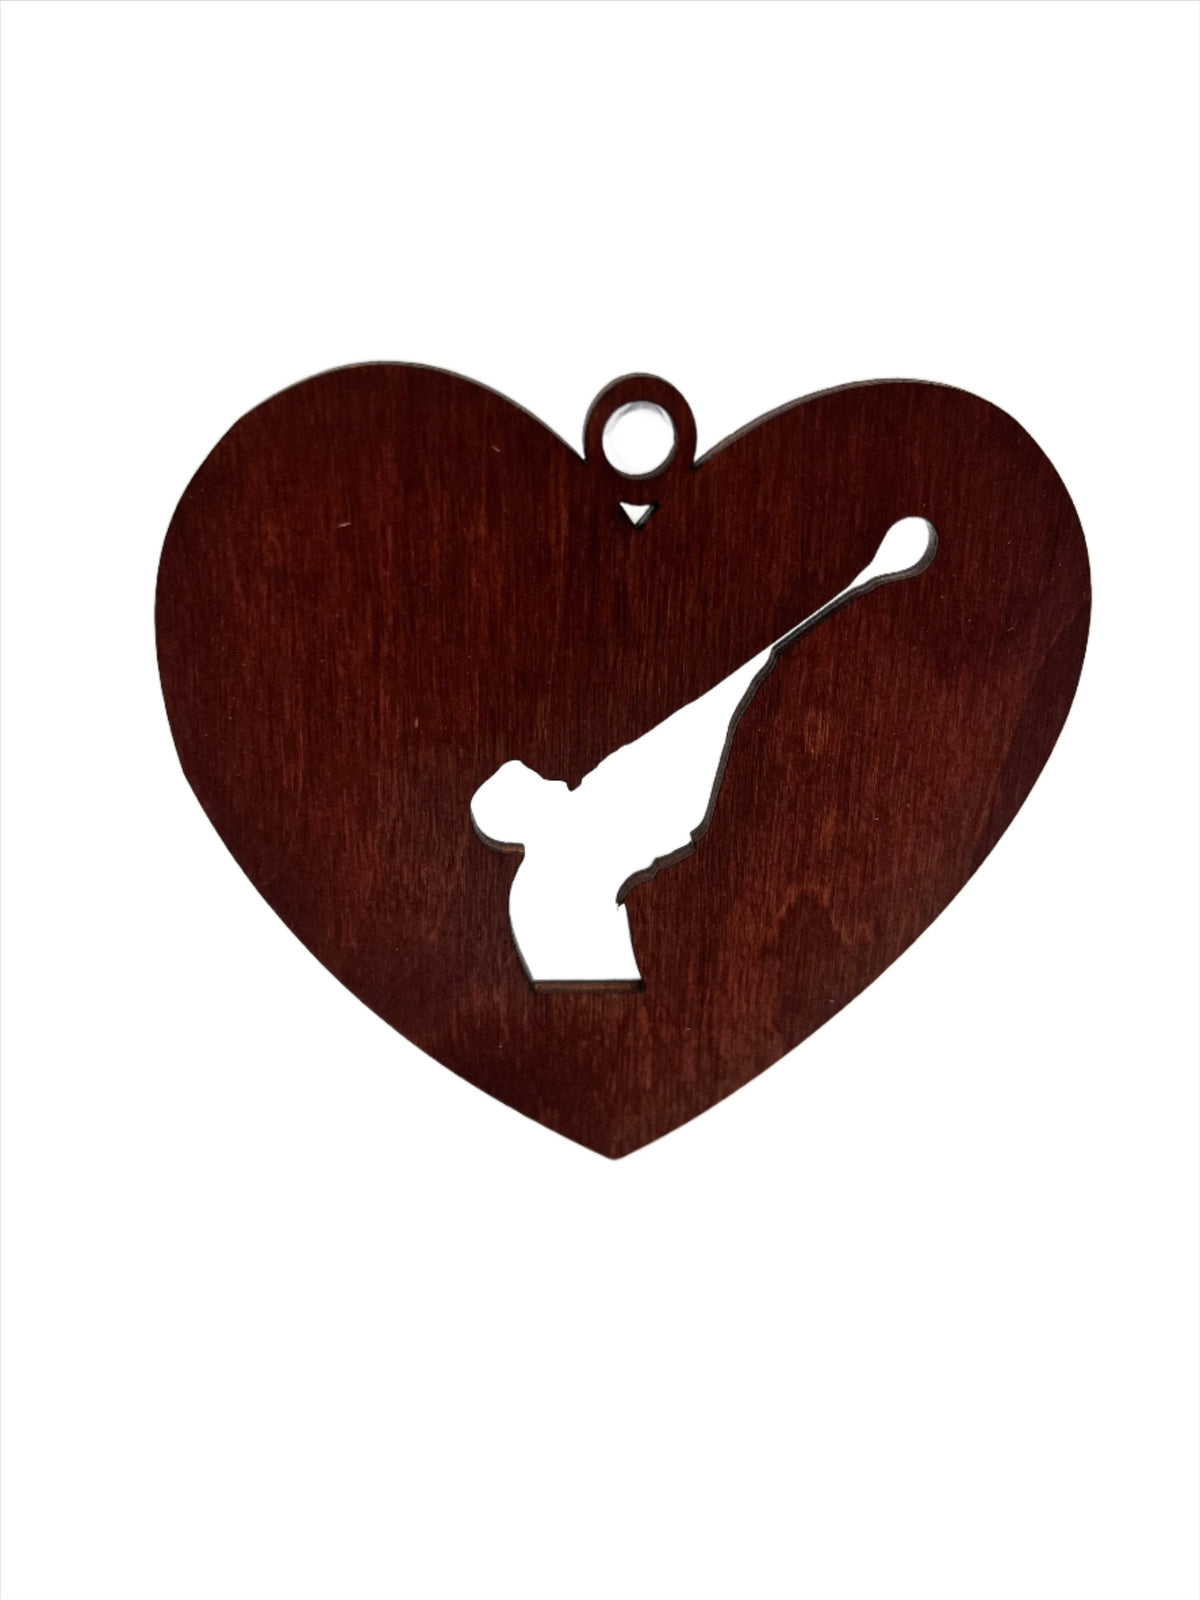 Gaffer wooden heart ornament